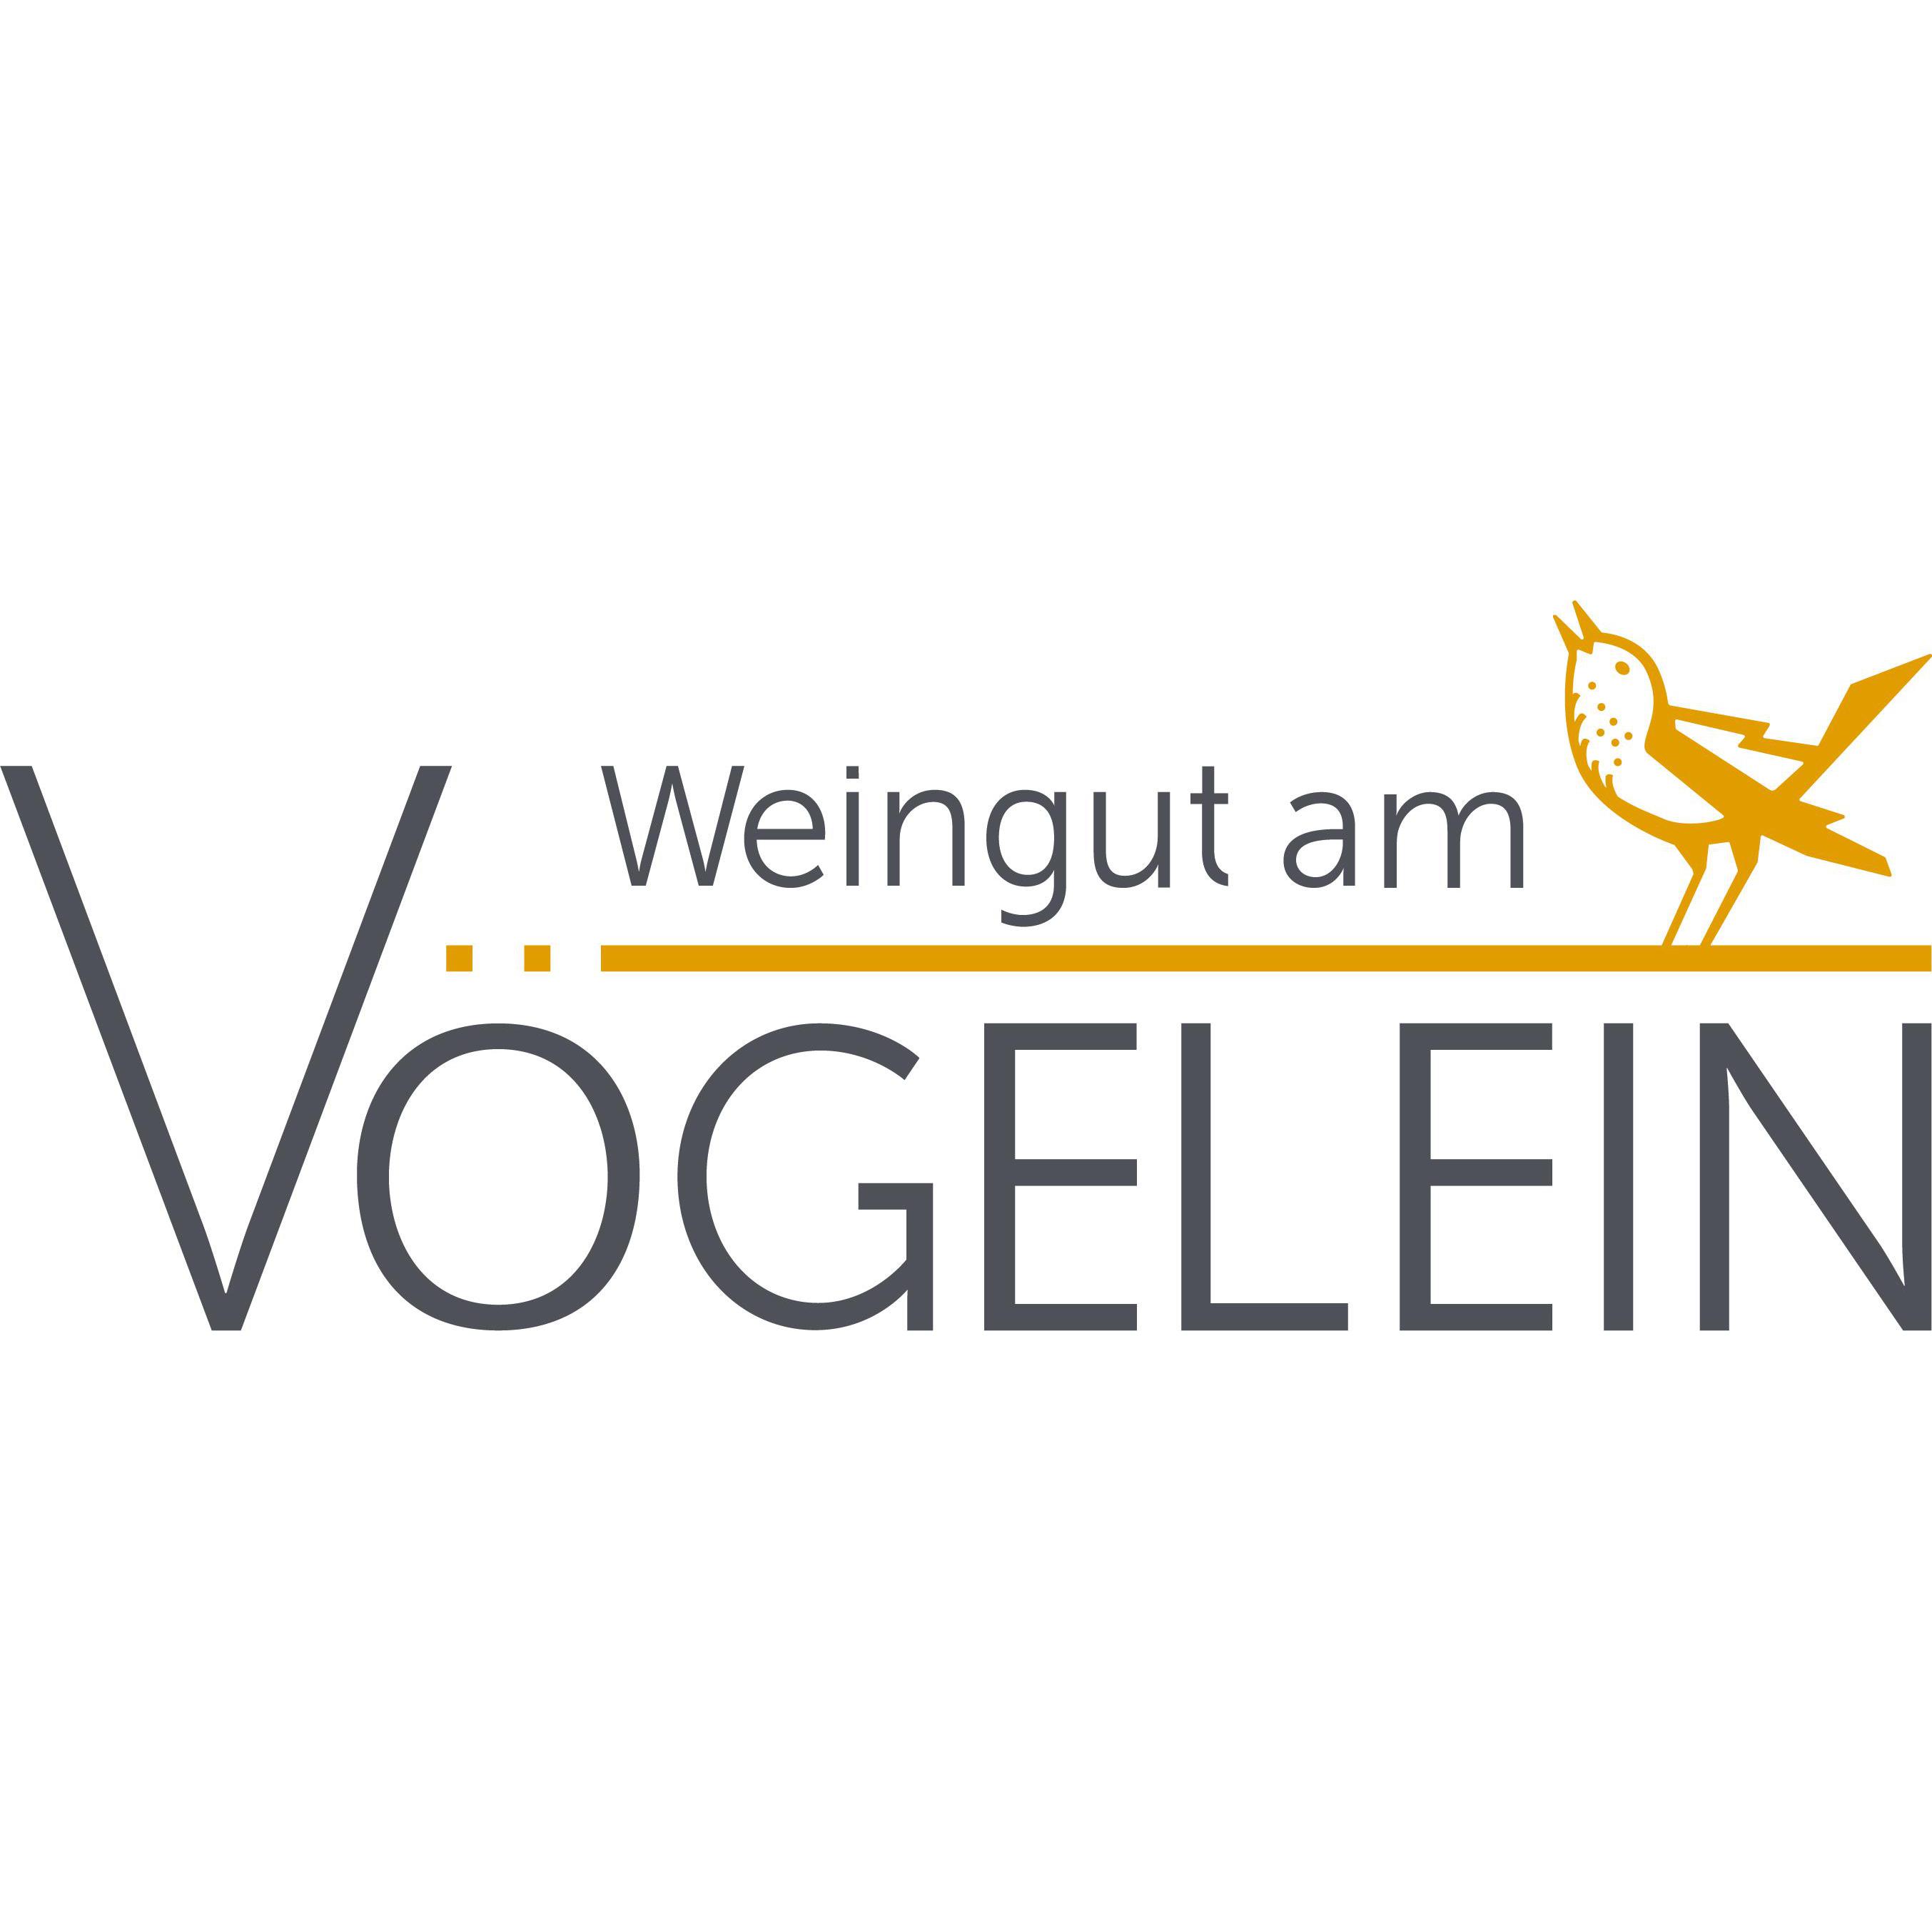 Weingut am Vögelein in Nordheim am Main - Logo